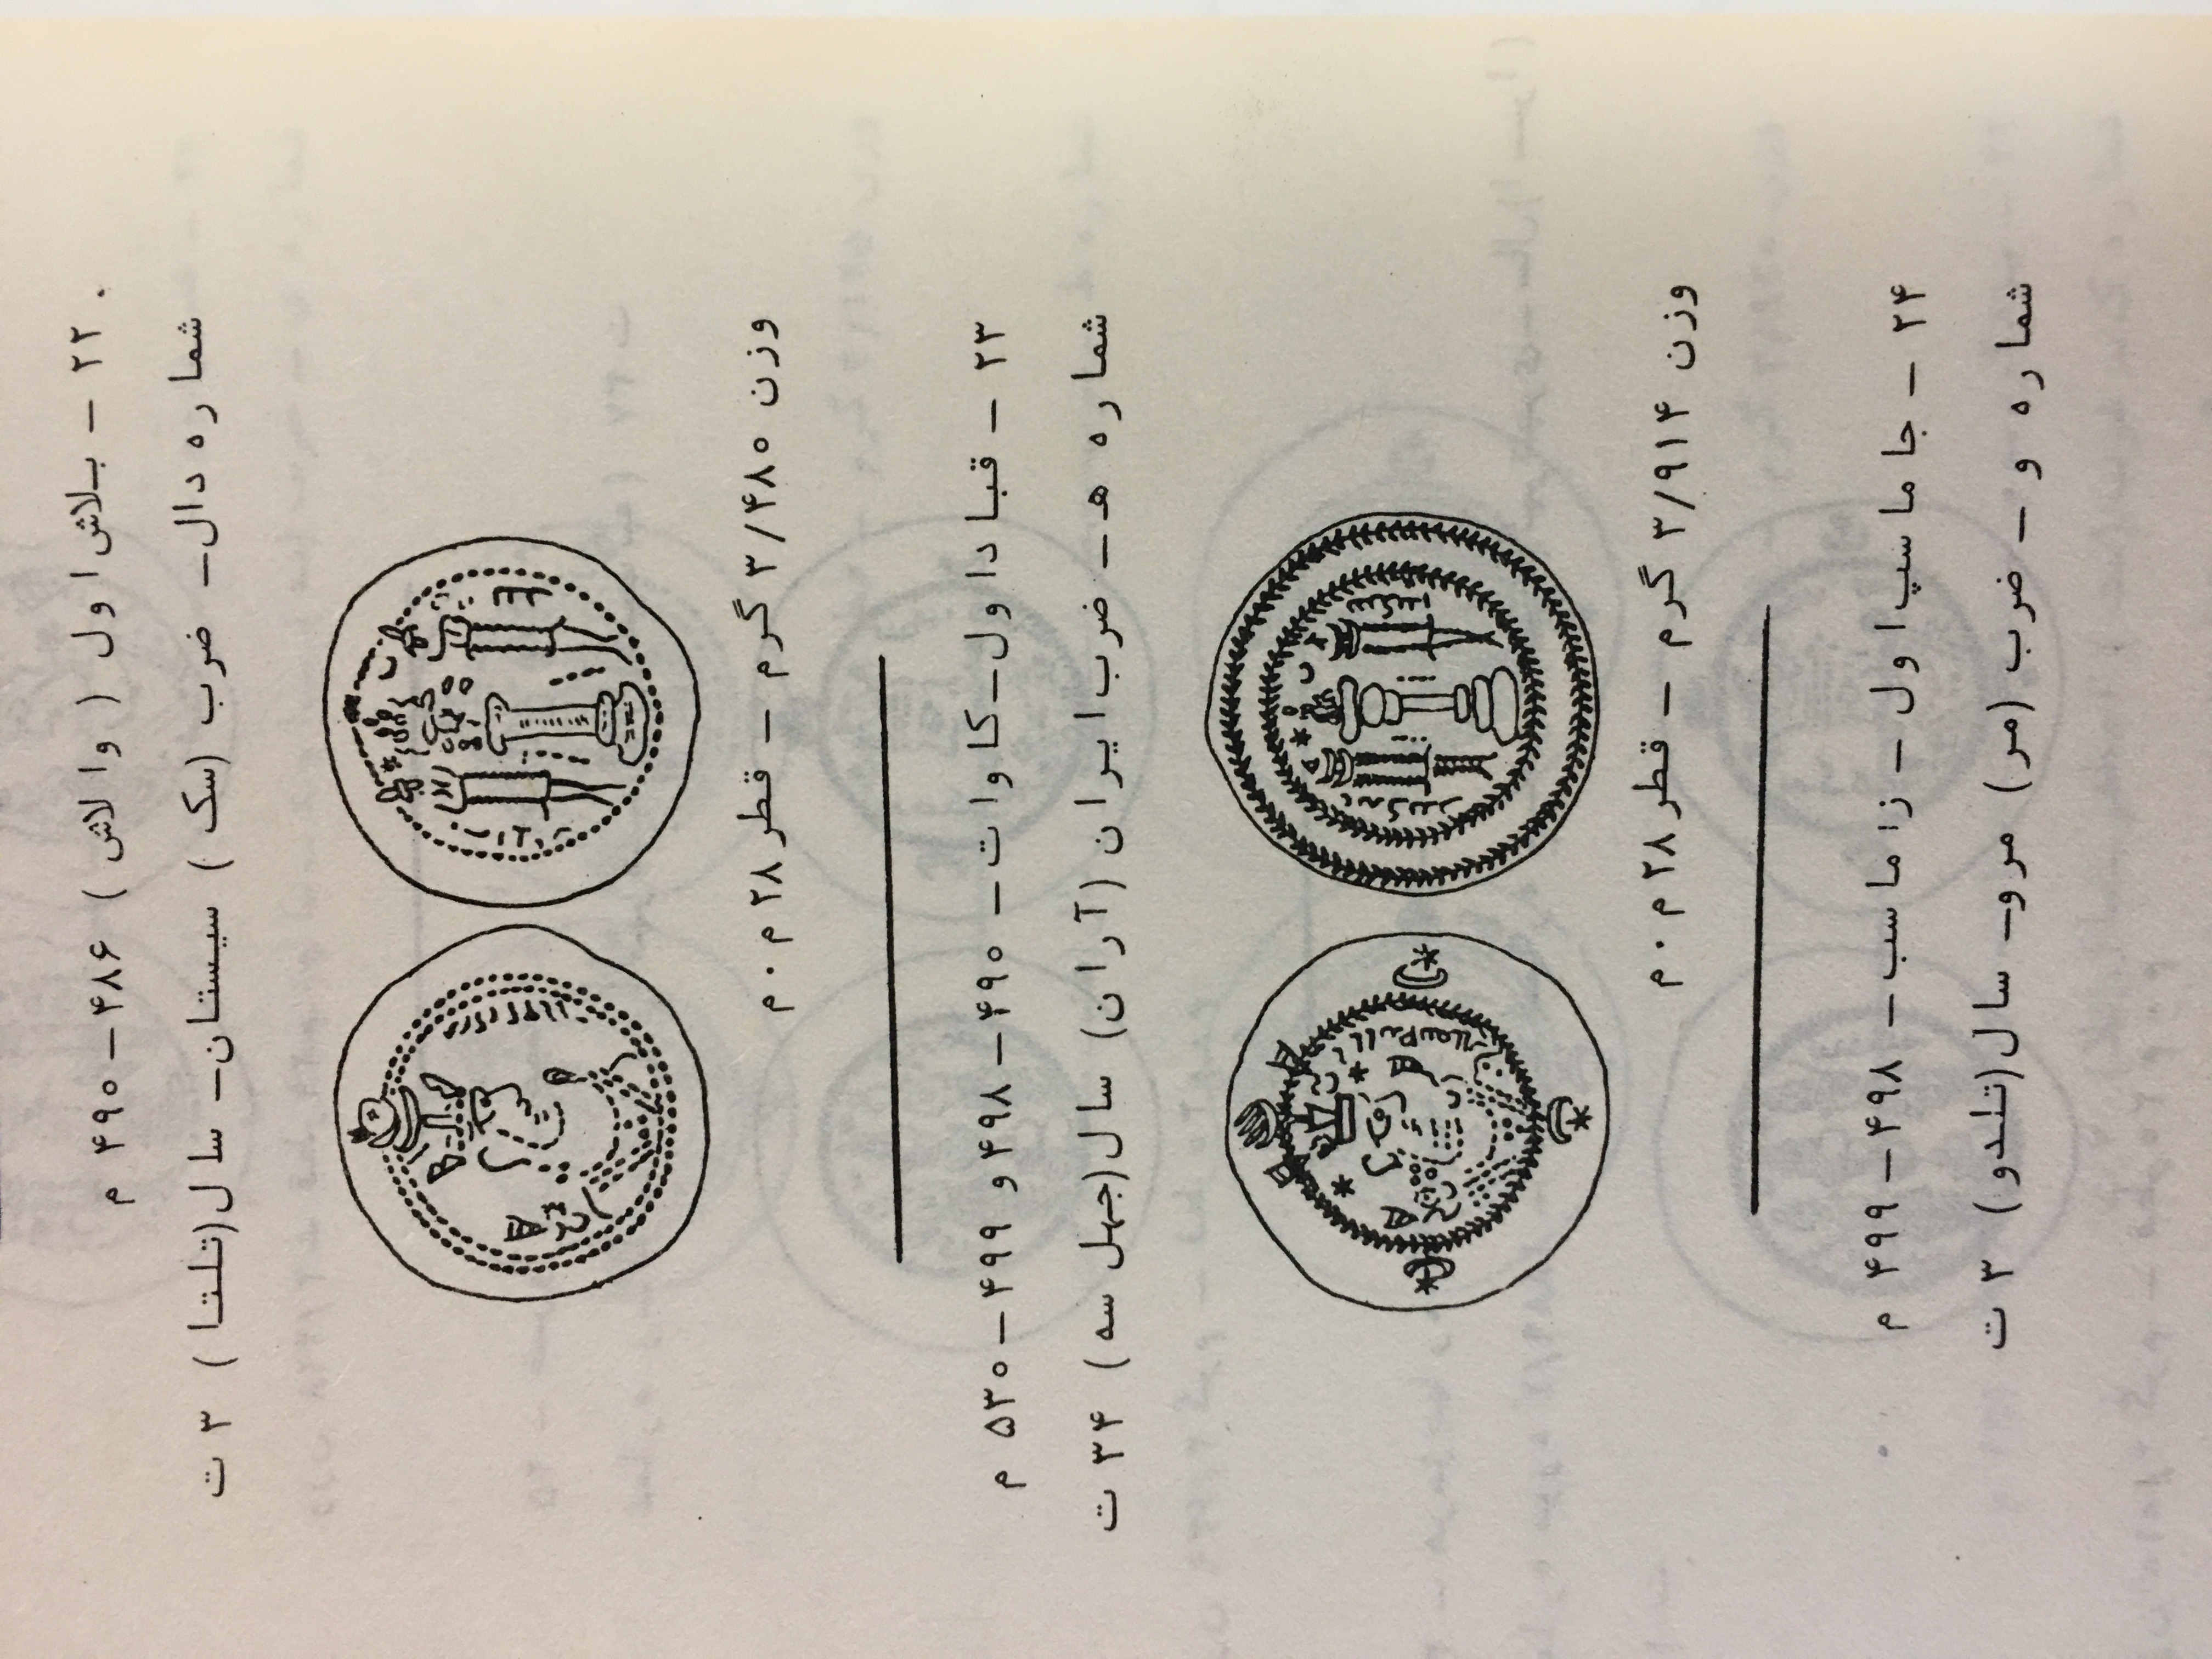 کتاب قدیمی و کمیاب  درهم های عرب ساسانی آموزش شناخت سکه های ساسانی